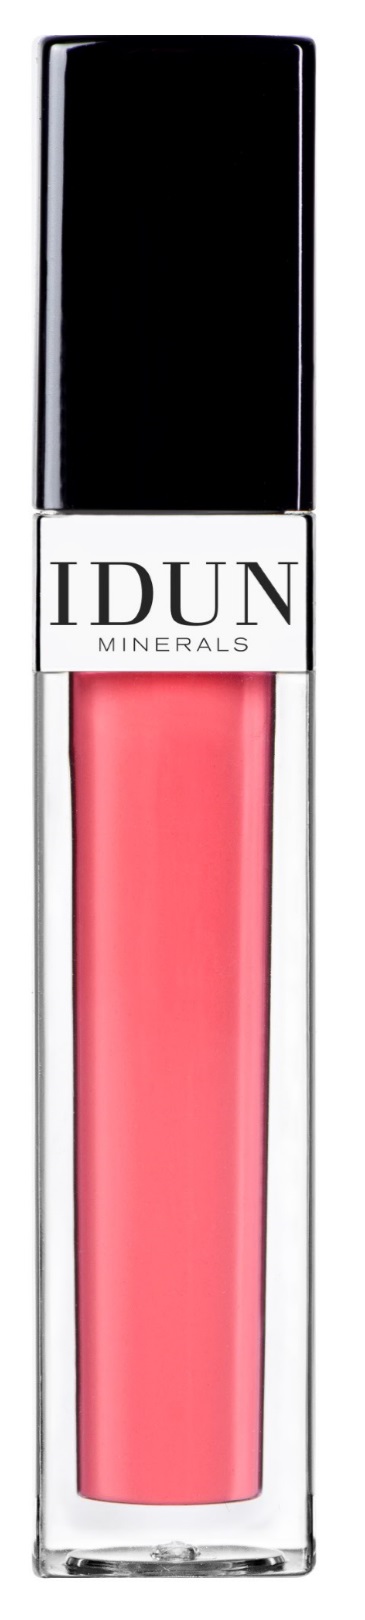 IDUN Minerals Lips Lipgloss Anna, 6ml.